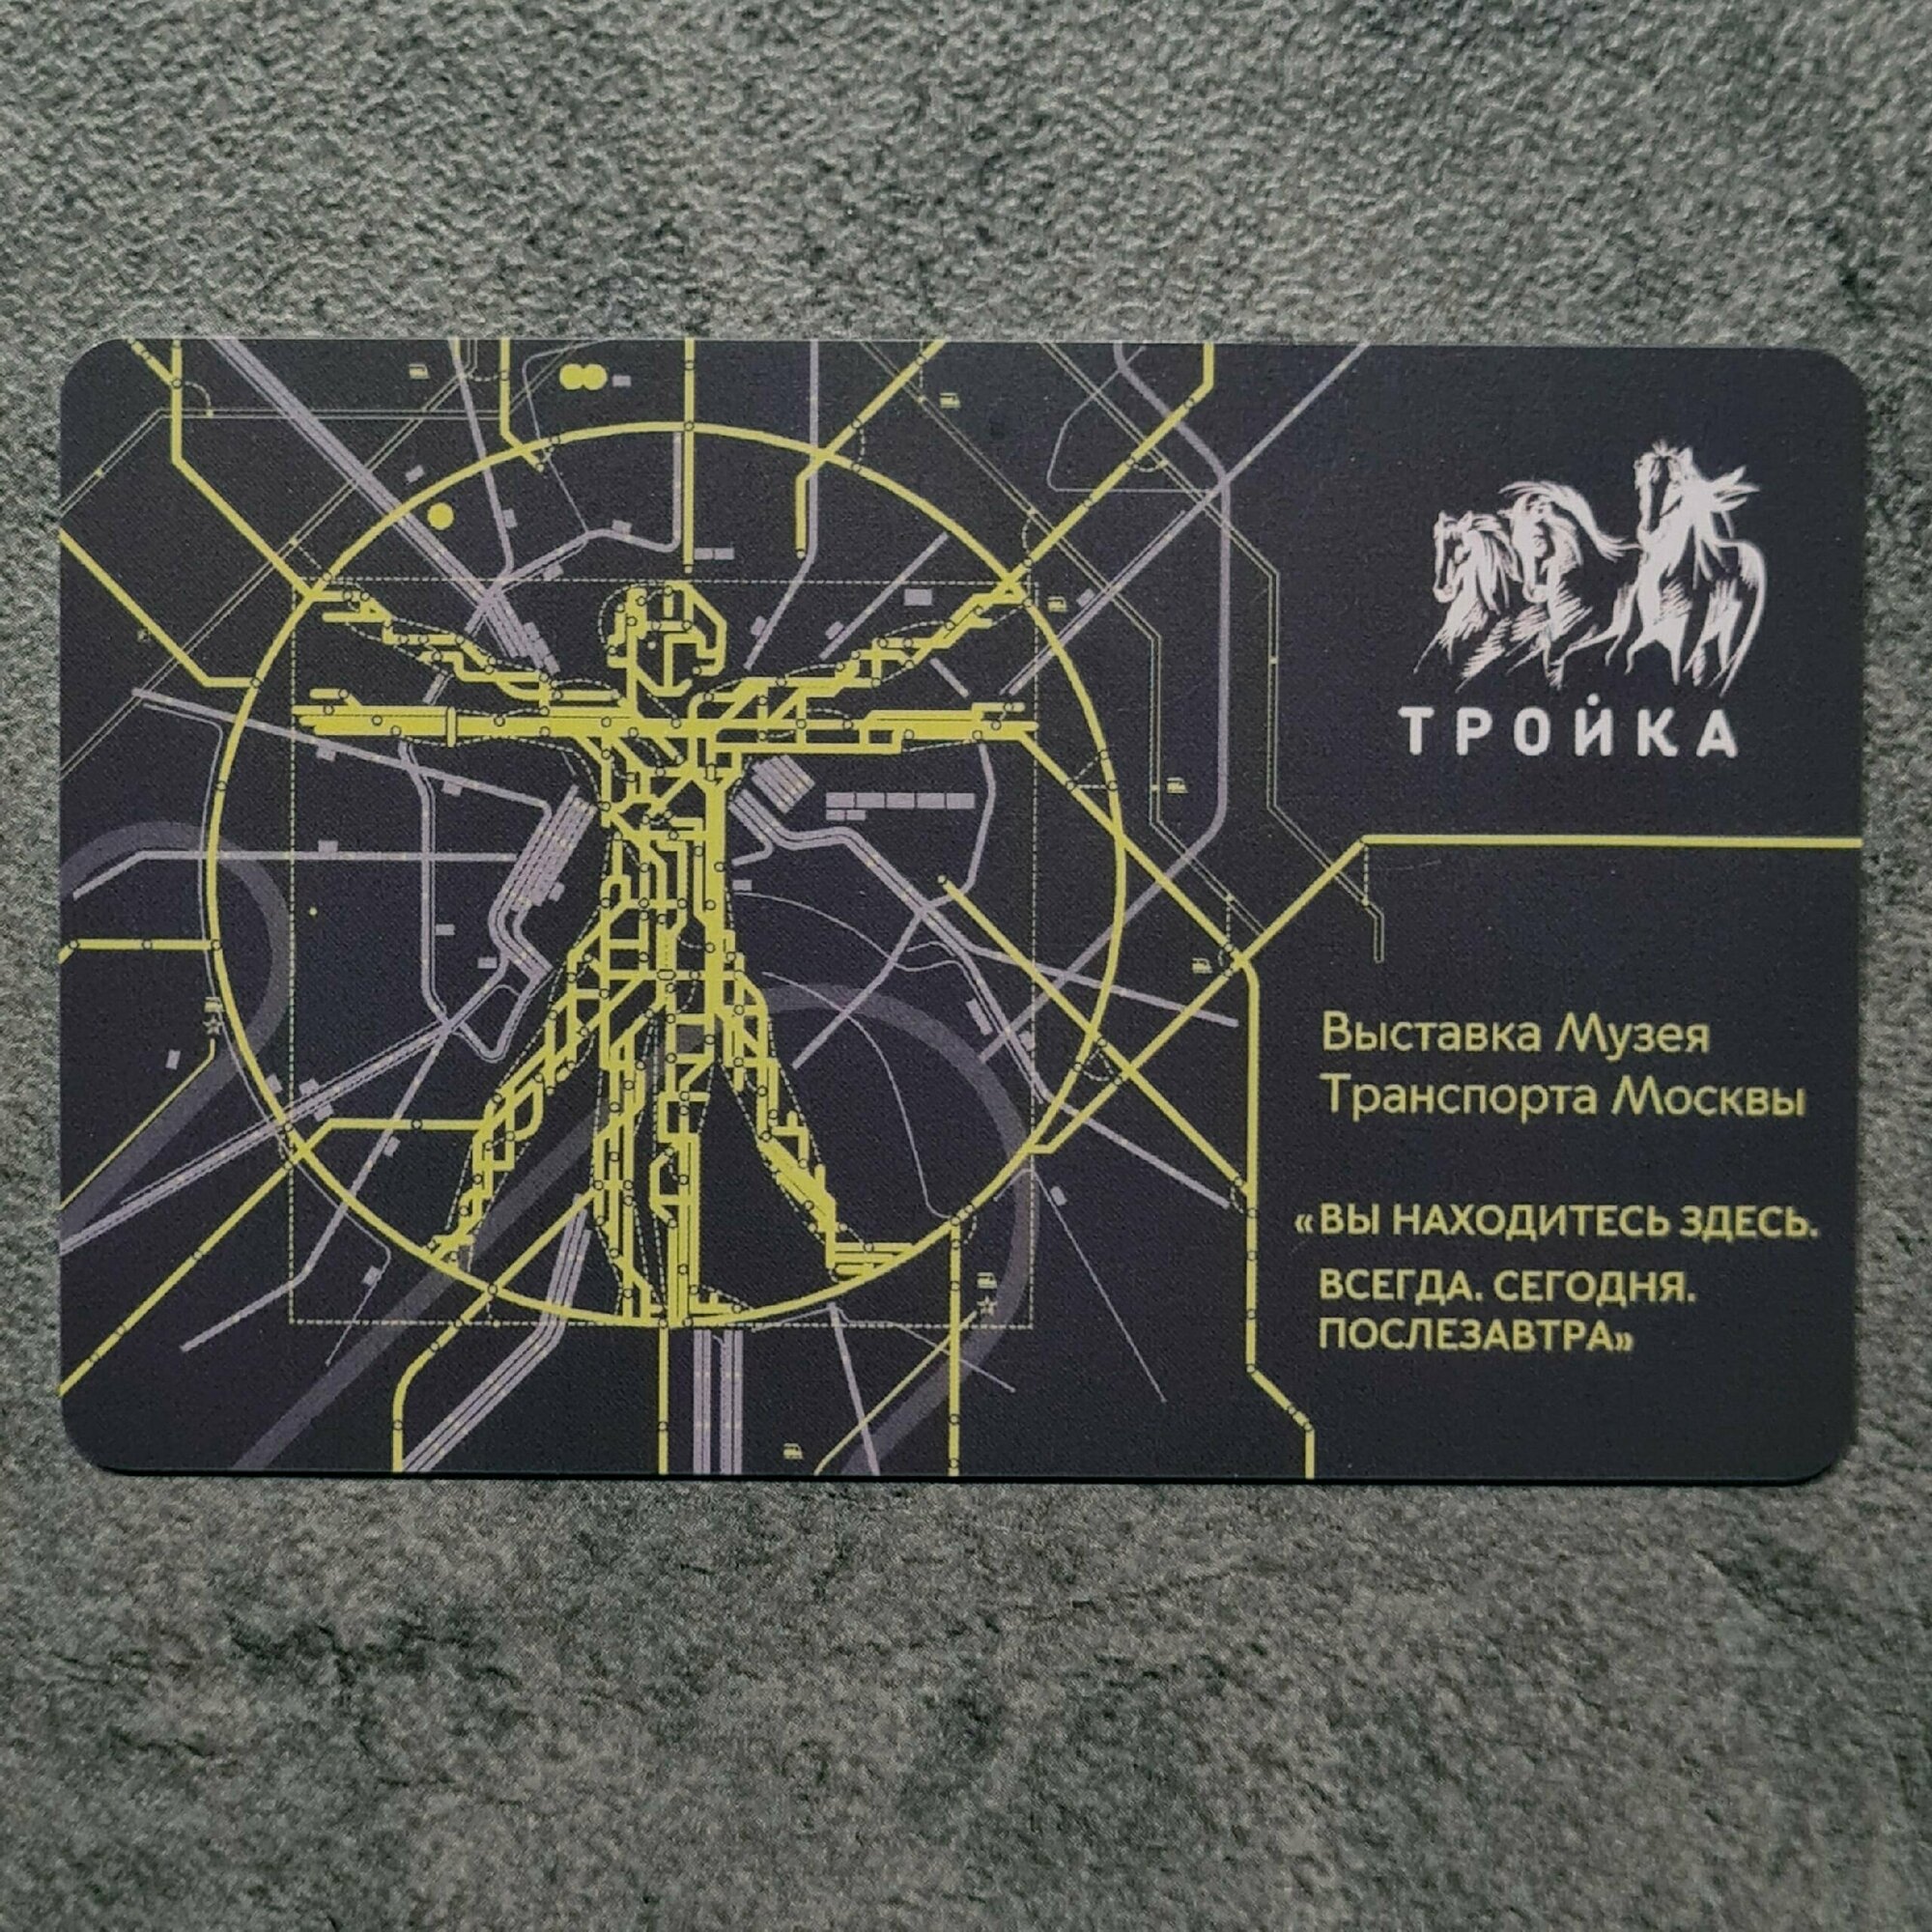 Транспортная карта метро Тройка - Выставка "Вы находитесь здесь" в Музее Транспорта Москвы. Витрувианский человек (чёрная)